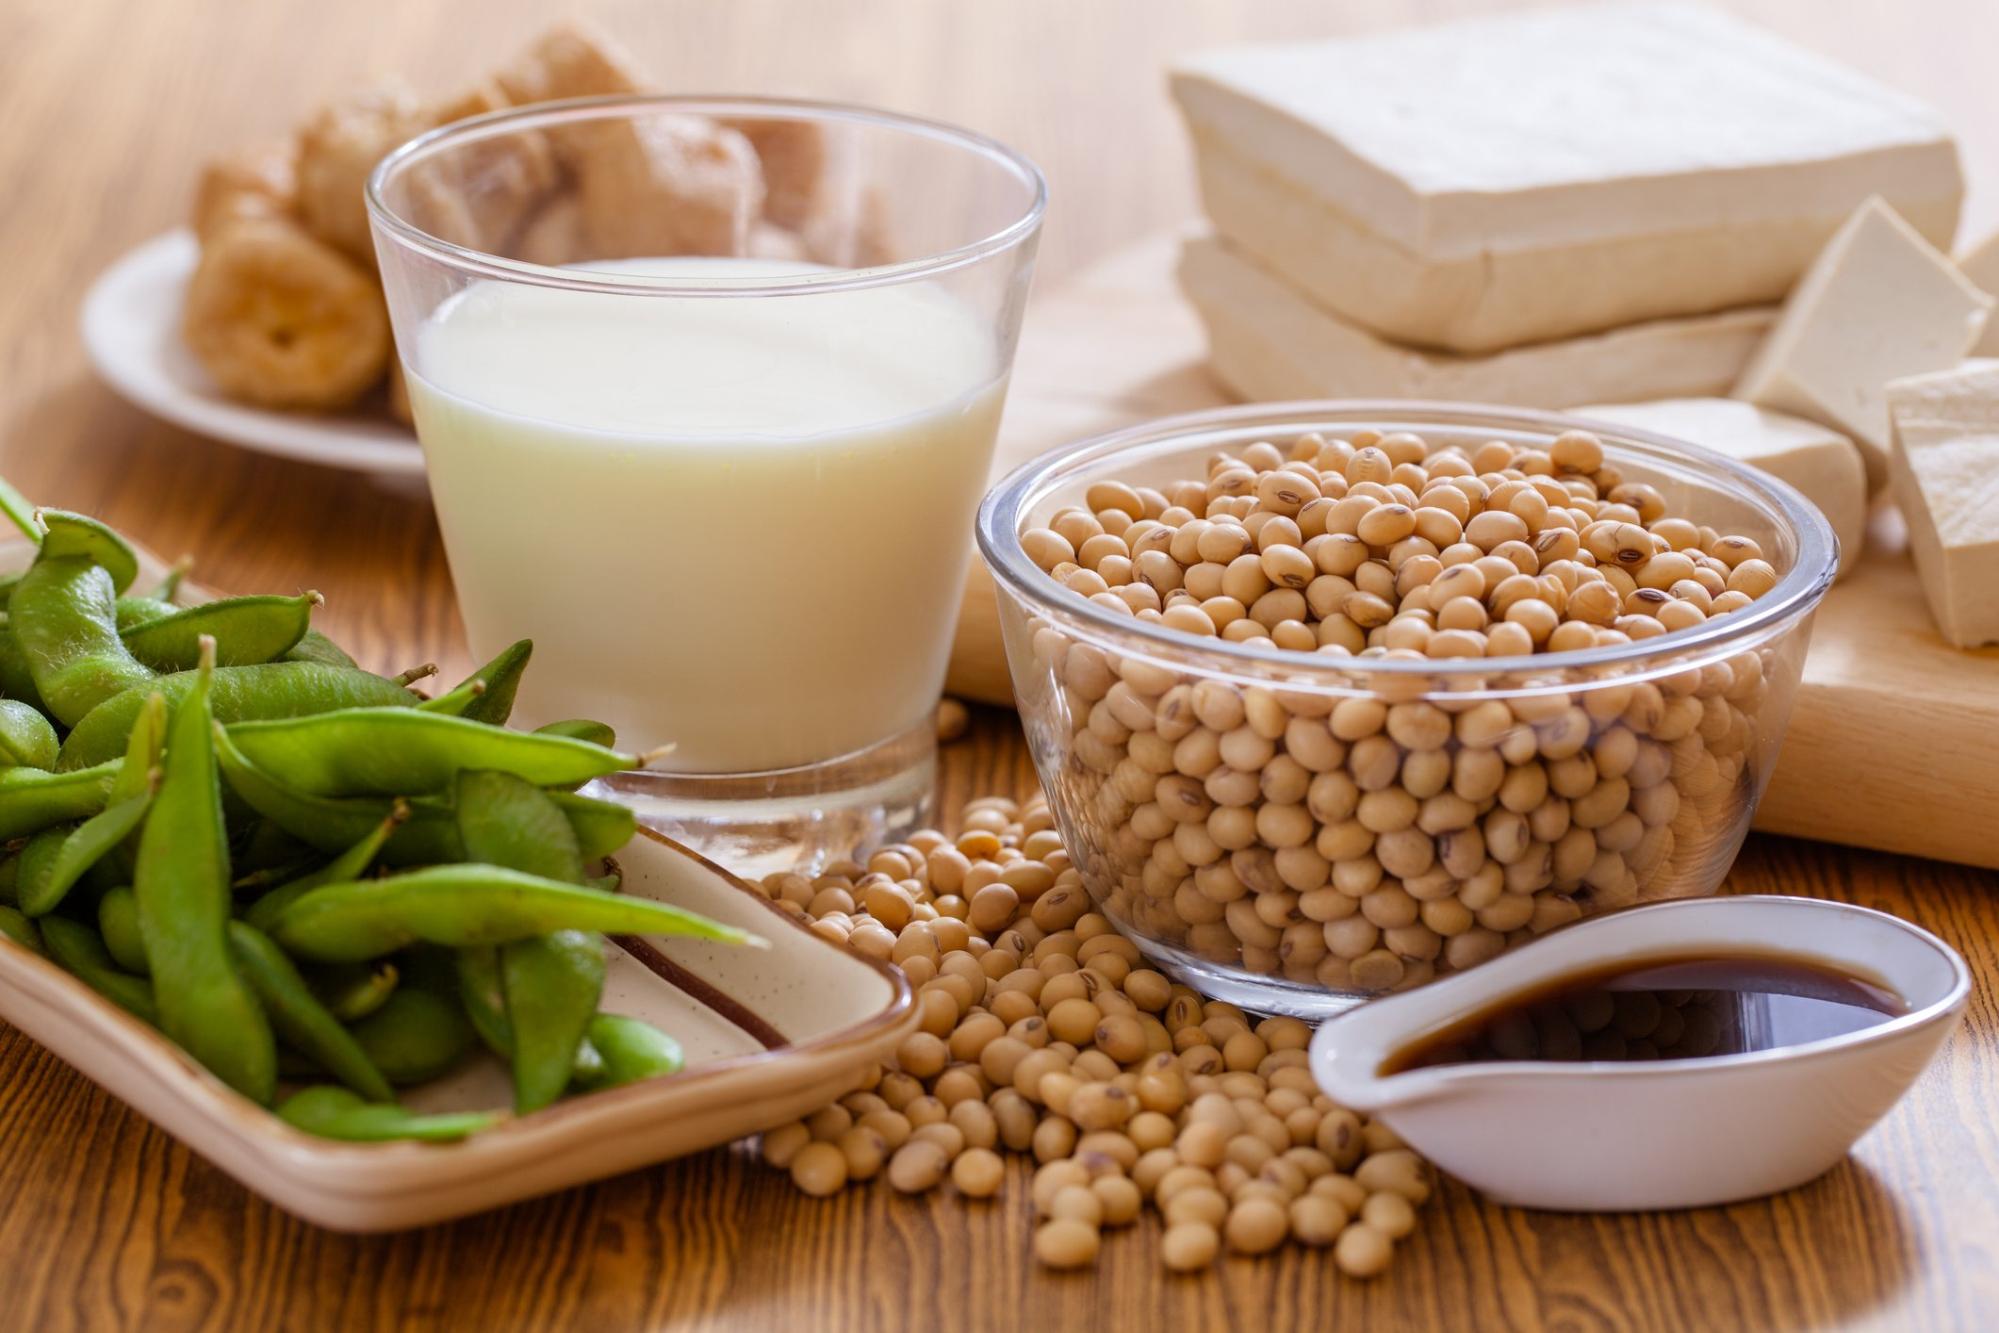 Uống sữa đậu nành mỗi ngày có tốt cho sức khỏe không?